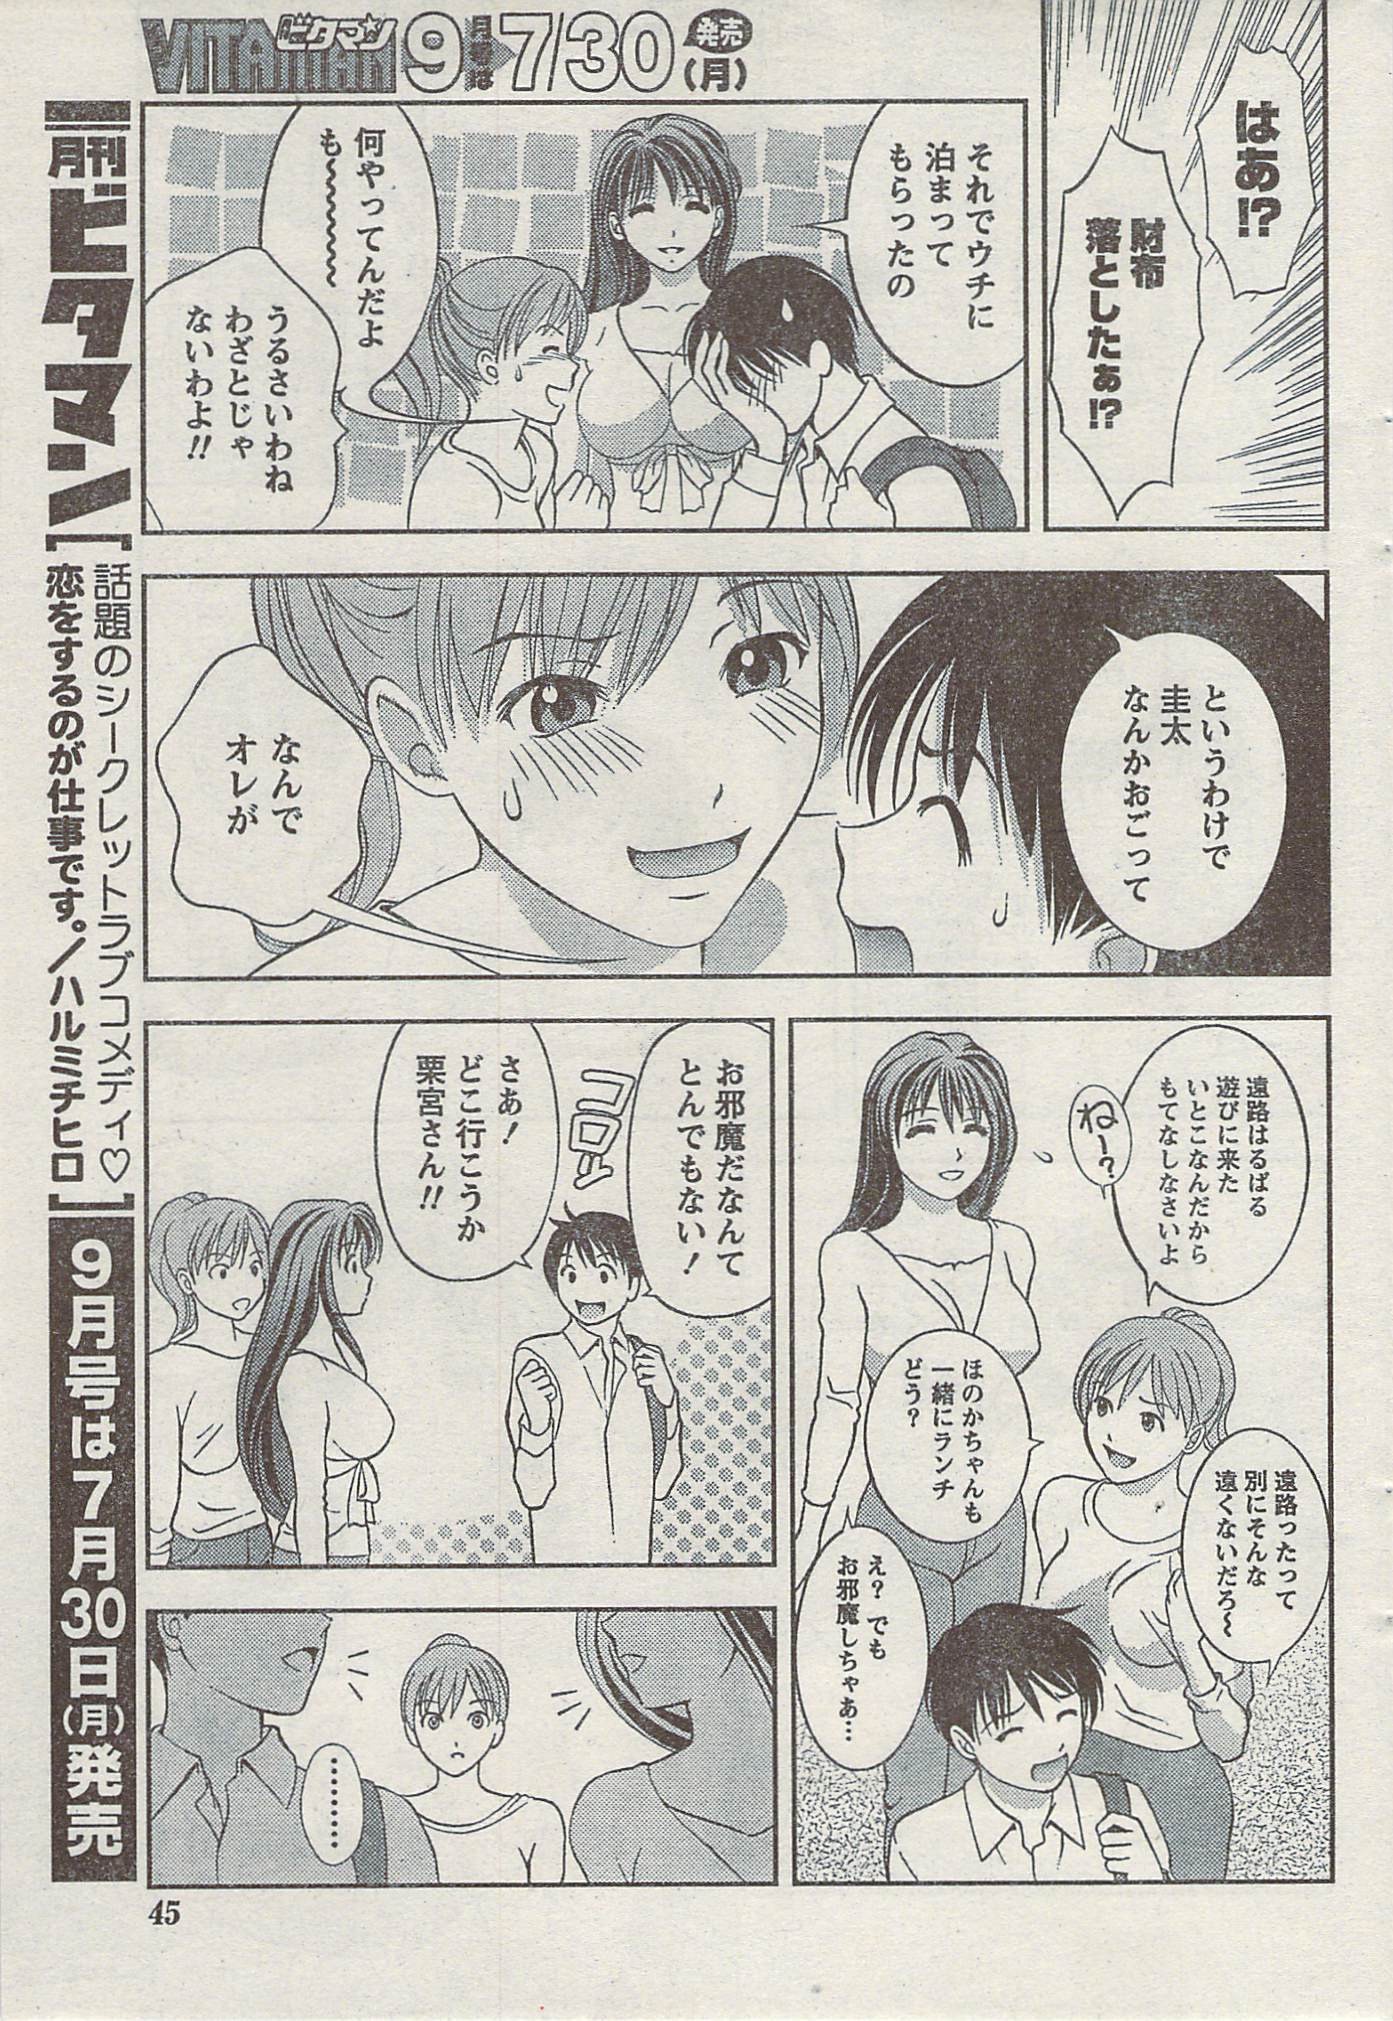 Akabane and Kimi-chan hentai manga picture 45